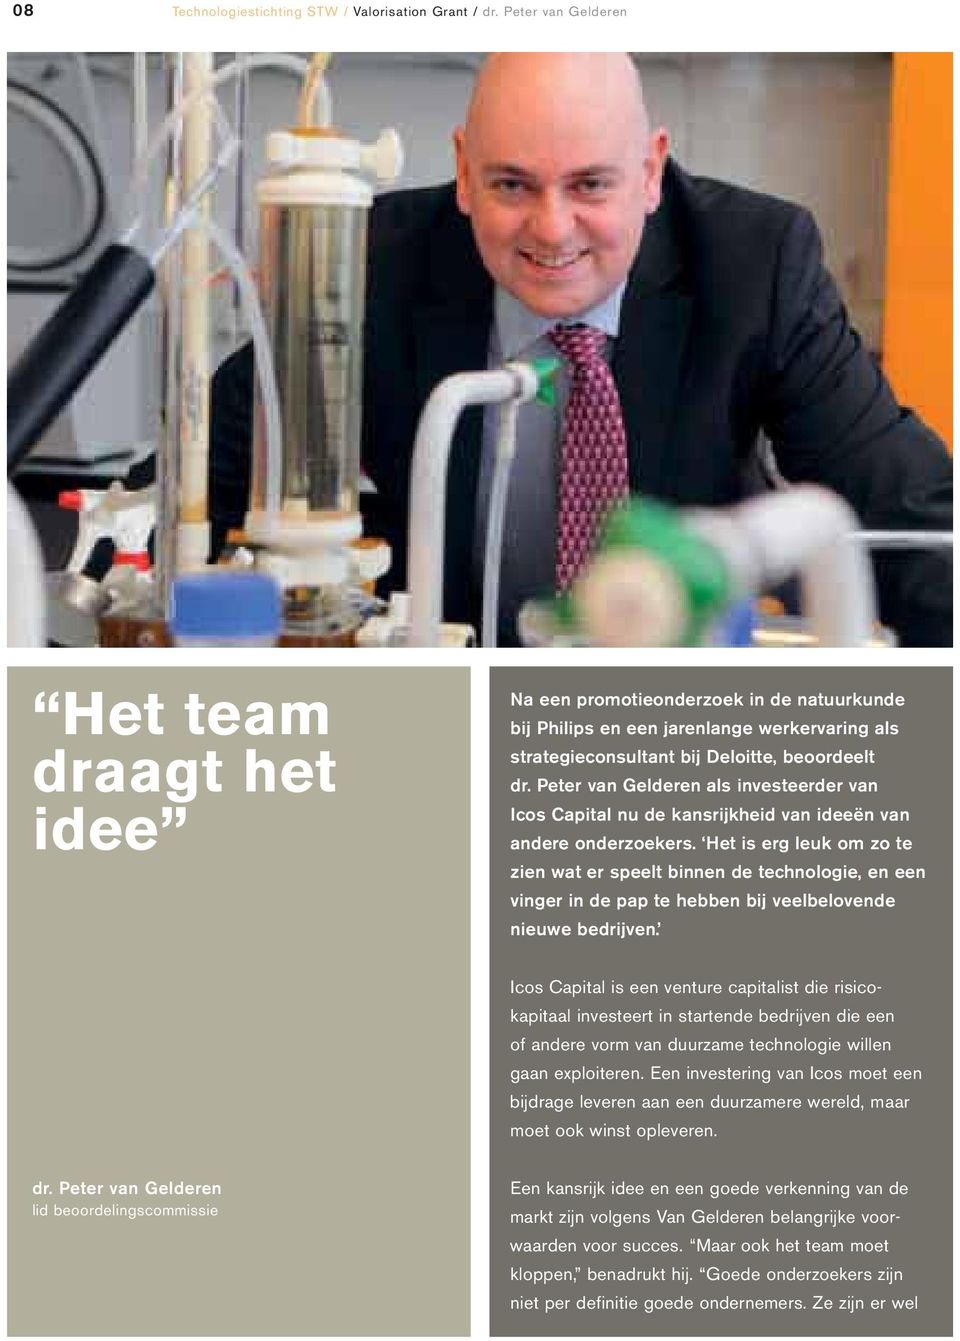 Peter van Gelderen als investeerder van Icos Capital nu de kansrijkheid van ideeën van andere onderzoekers.